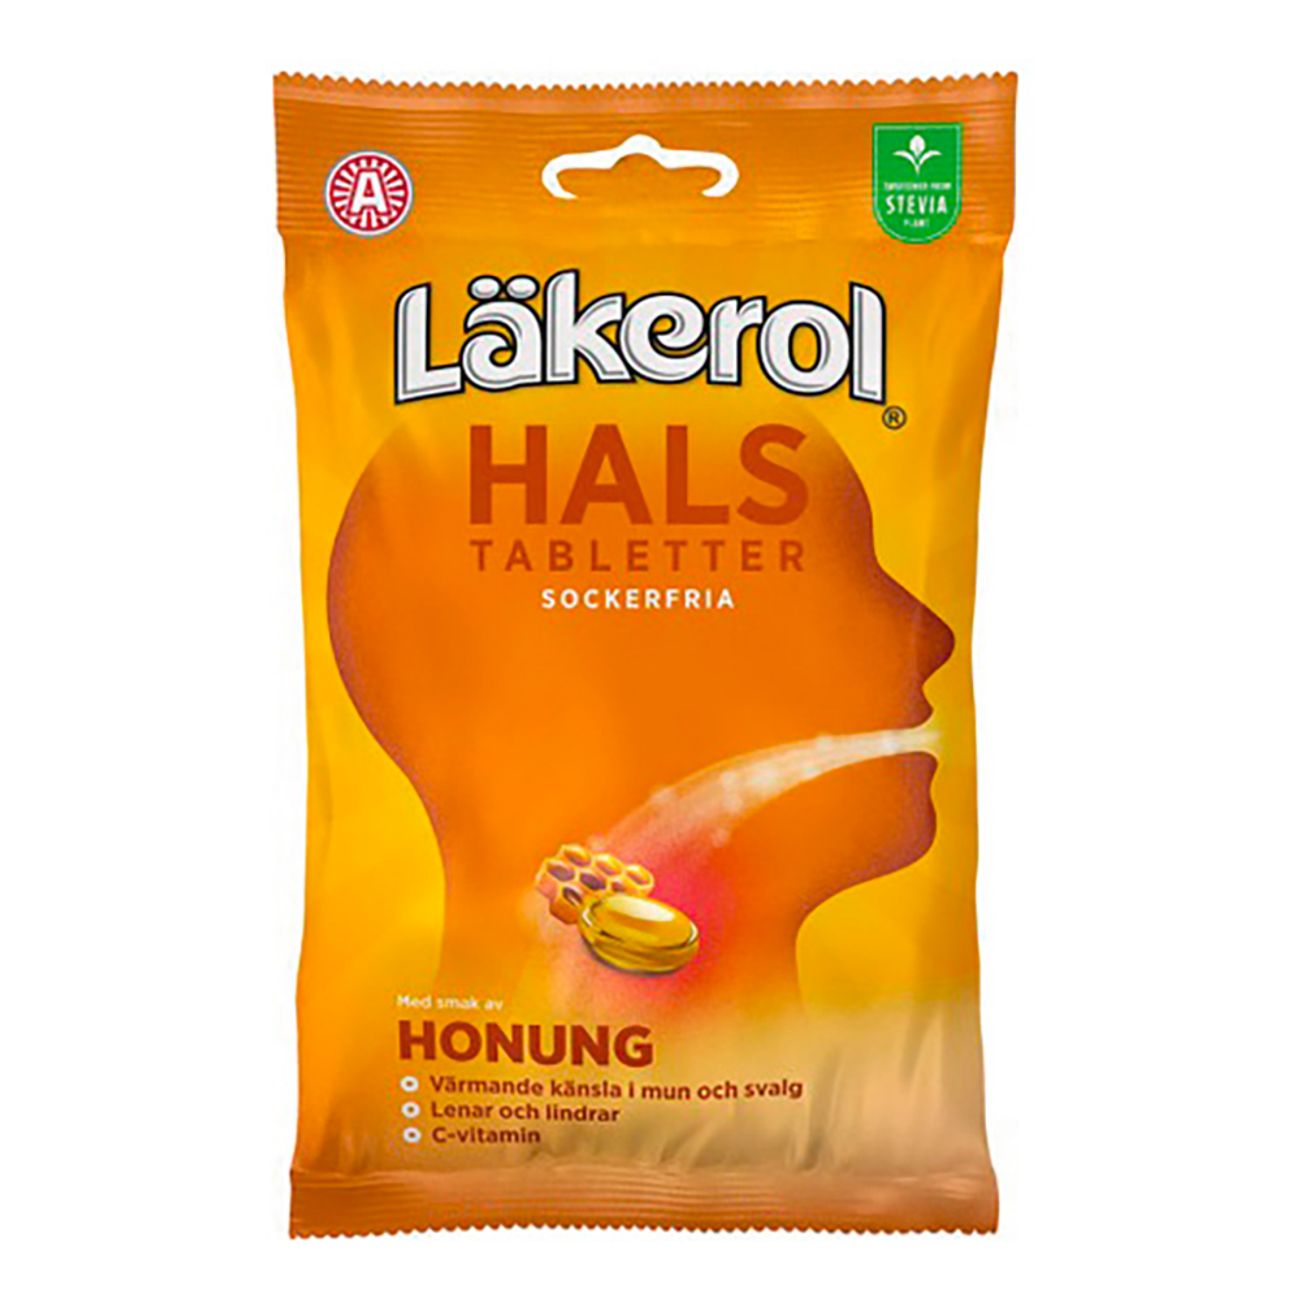 lakerol-halstabletter-honung-sockerfria-86753-1